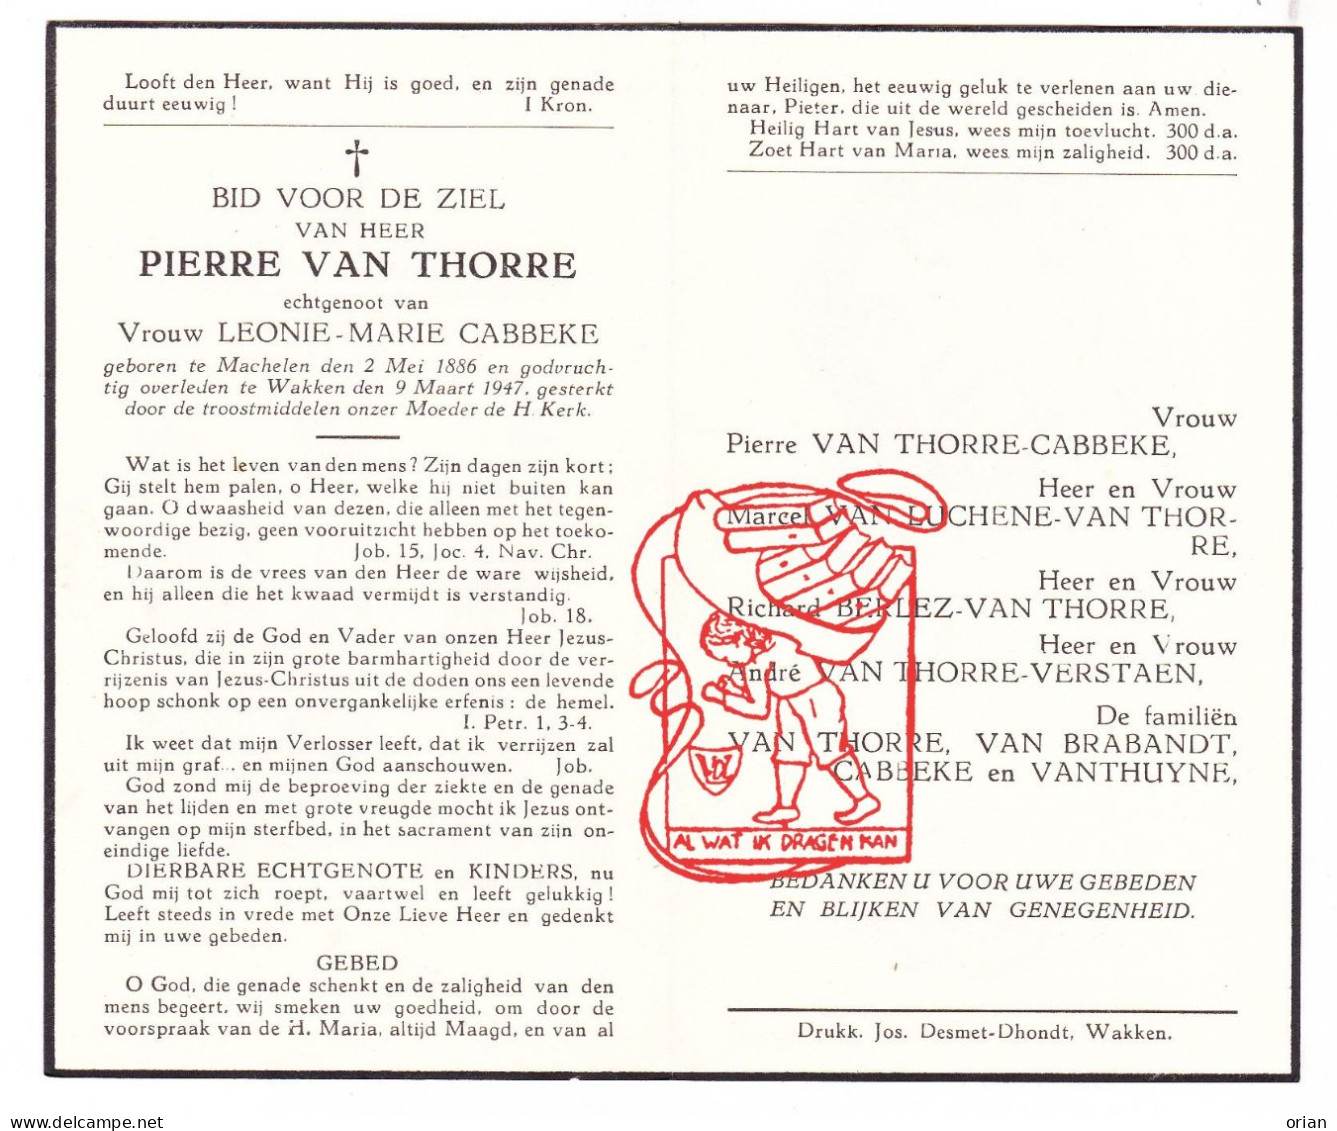 DP Pierre Van Thorre ° Machelen Zulte 1886 † Wakken Dentergem 1947 Cabbeke Van Luchene Berlez Verstaen Brabandt Thuyne - Andachtsbilder